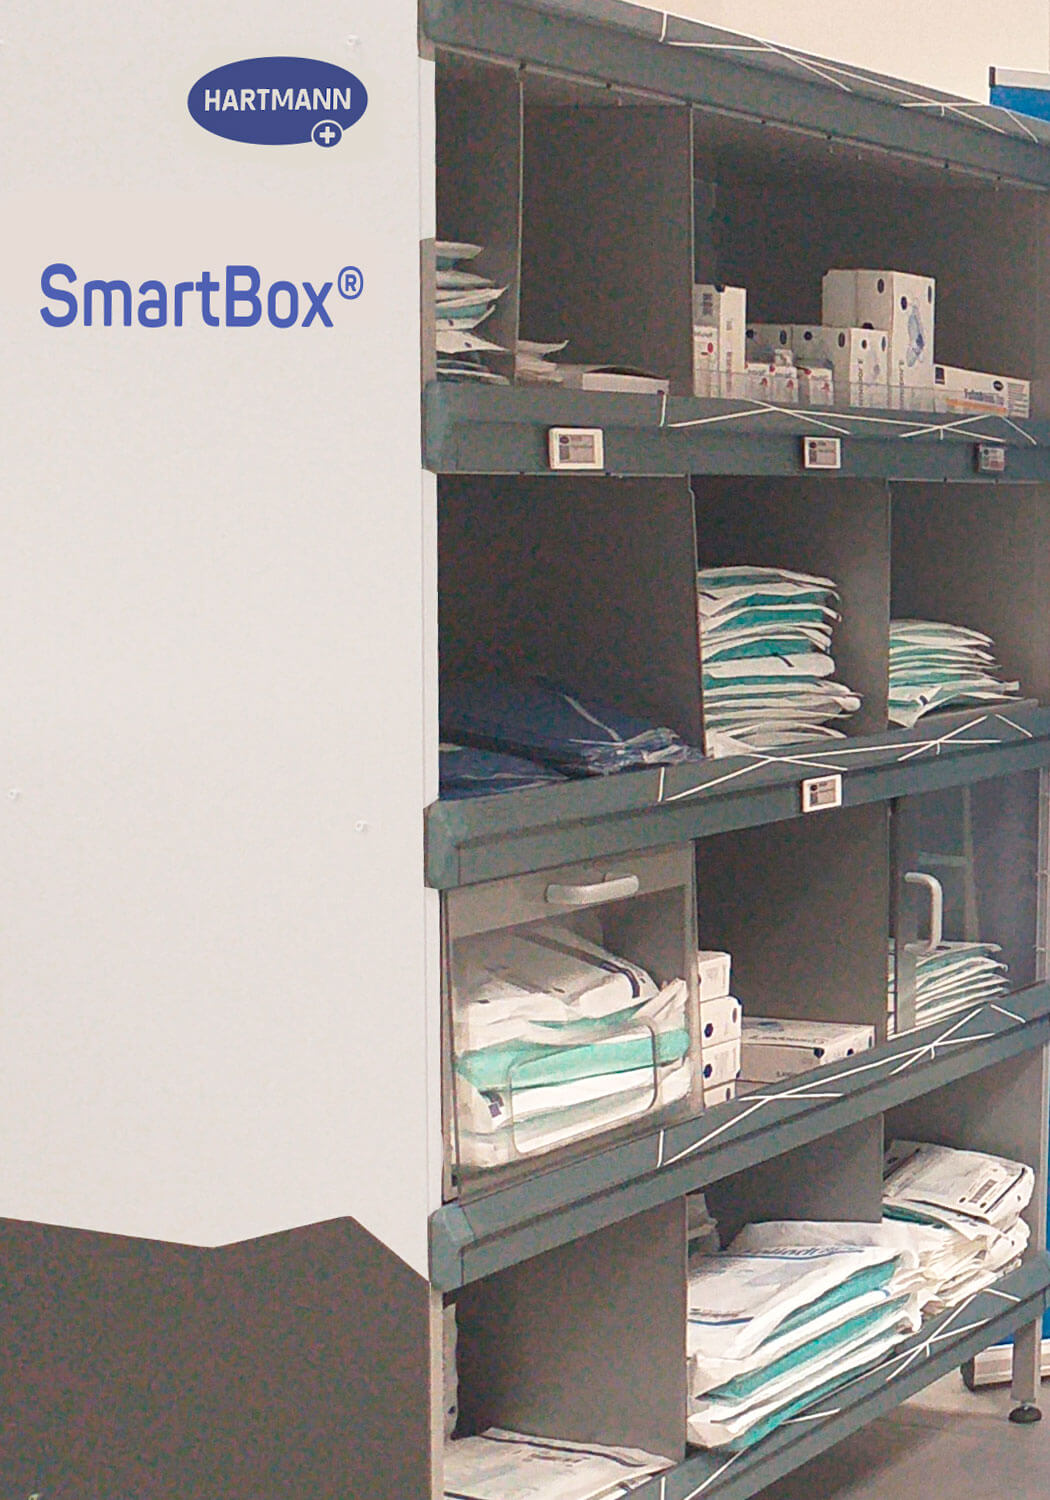 SmartBox - solución inteligente para la gestión del material en el área quirúrgica